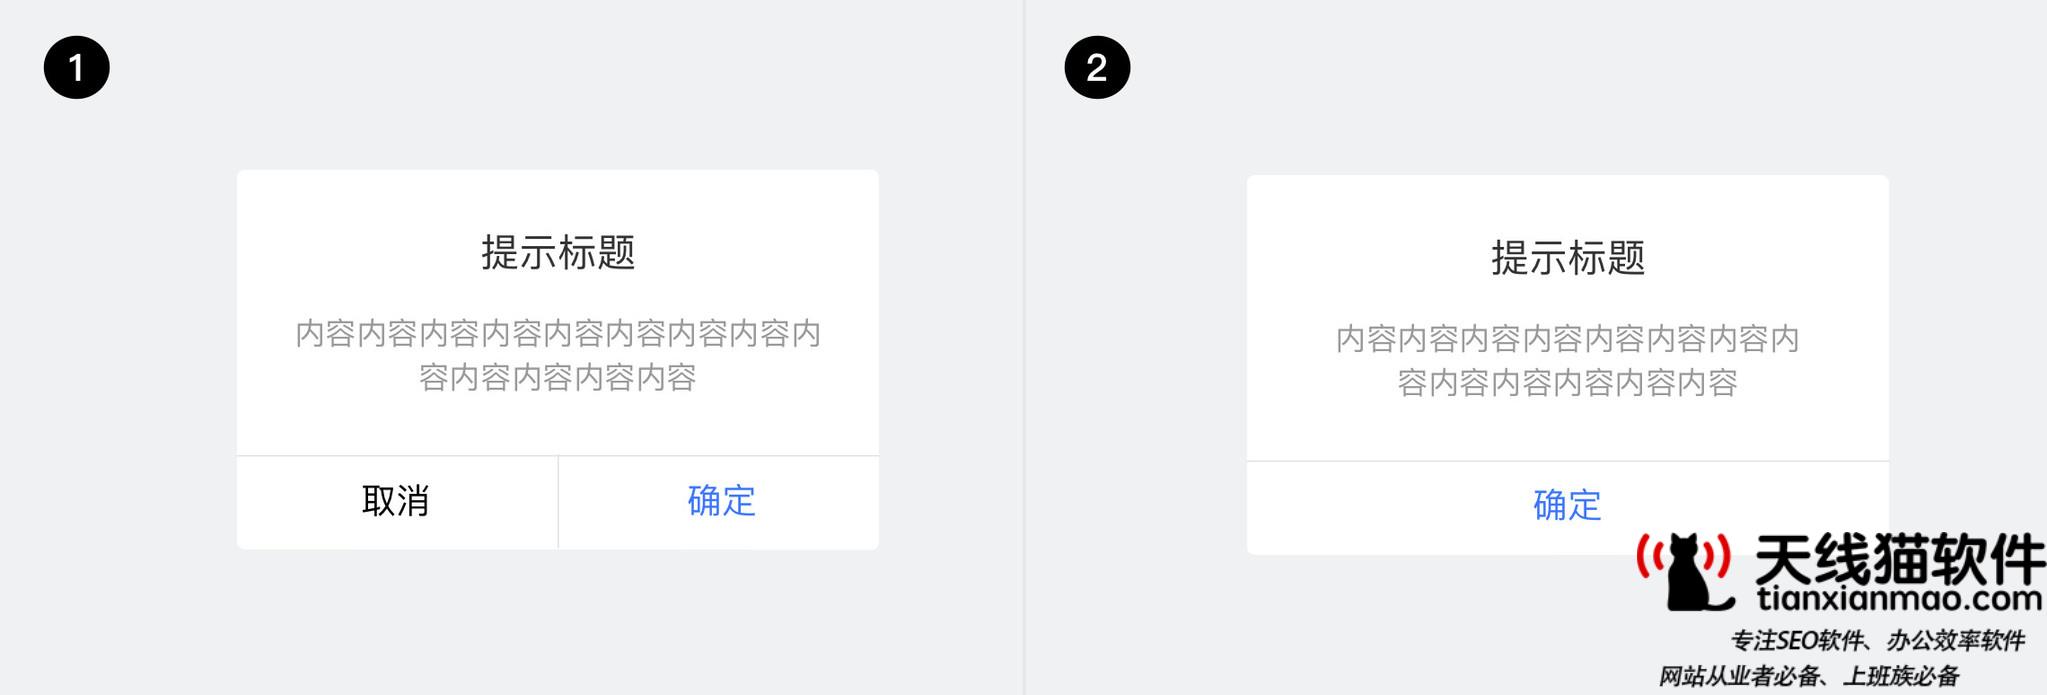 移动互联网套餐一览表中国移动有哪些网卡套餐2